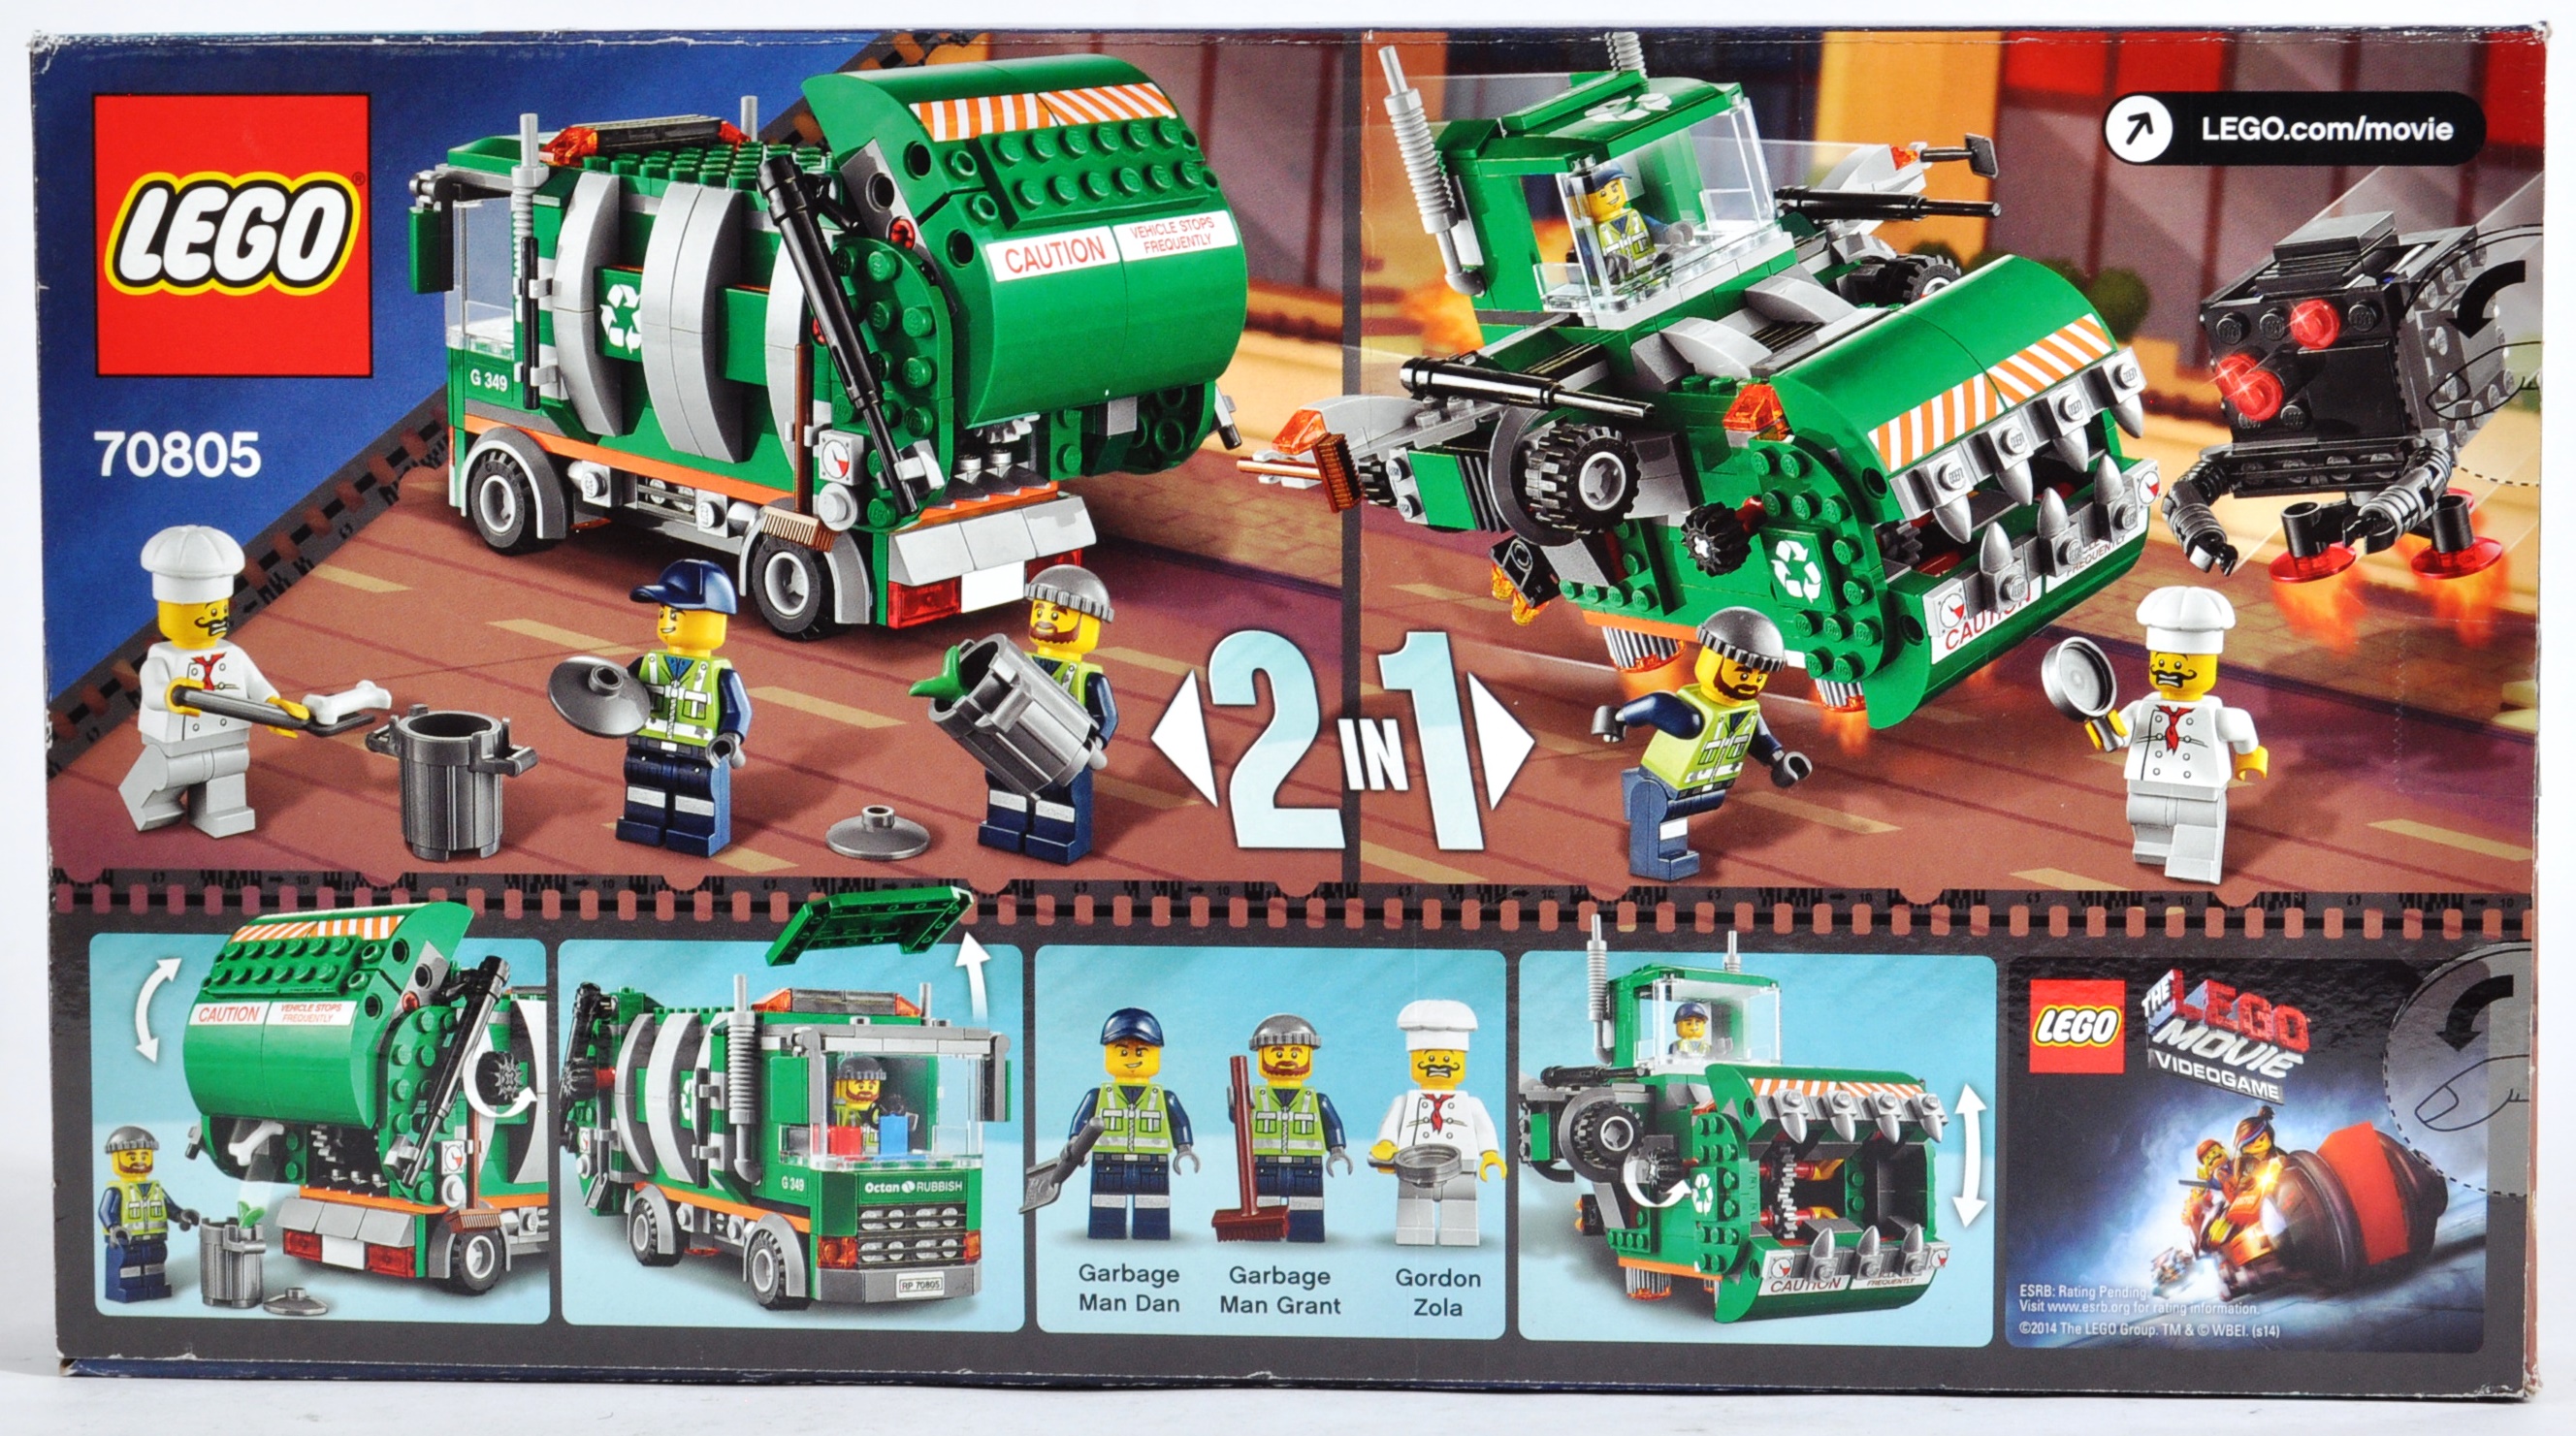 LEGO SETS - LEGO MOVIE AND LEGO STUDIOS - Image 3 of 13